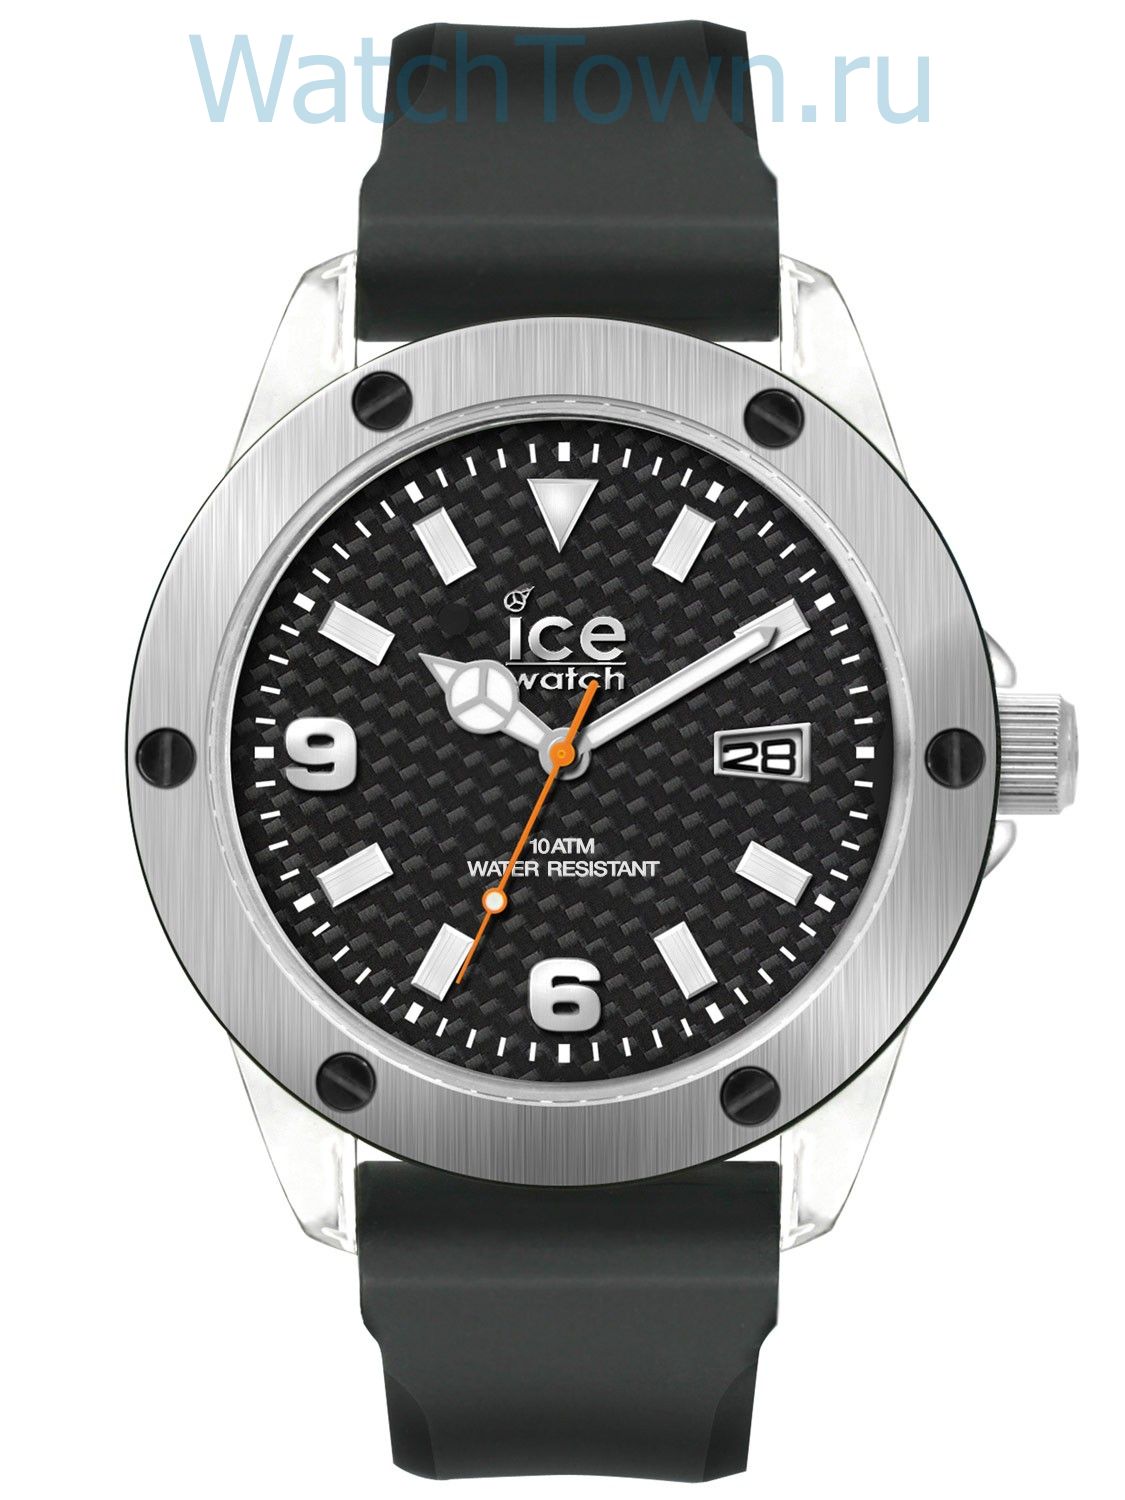 Ice Watch (XX.SR.XL.S.11)